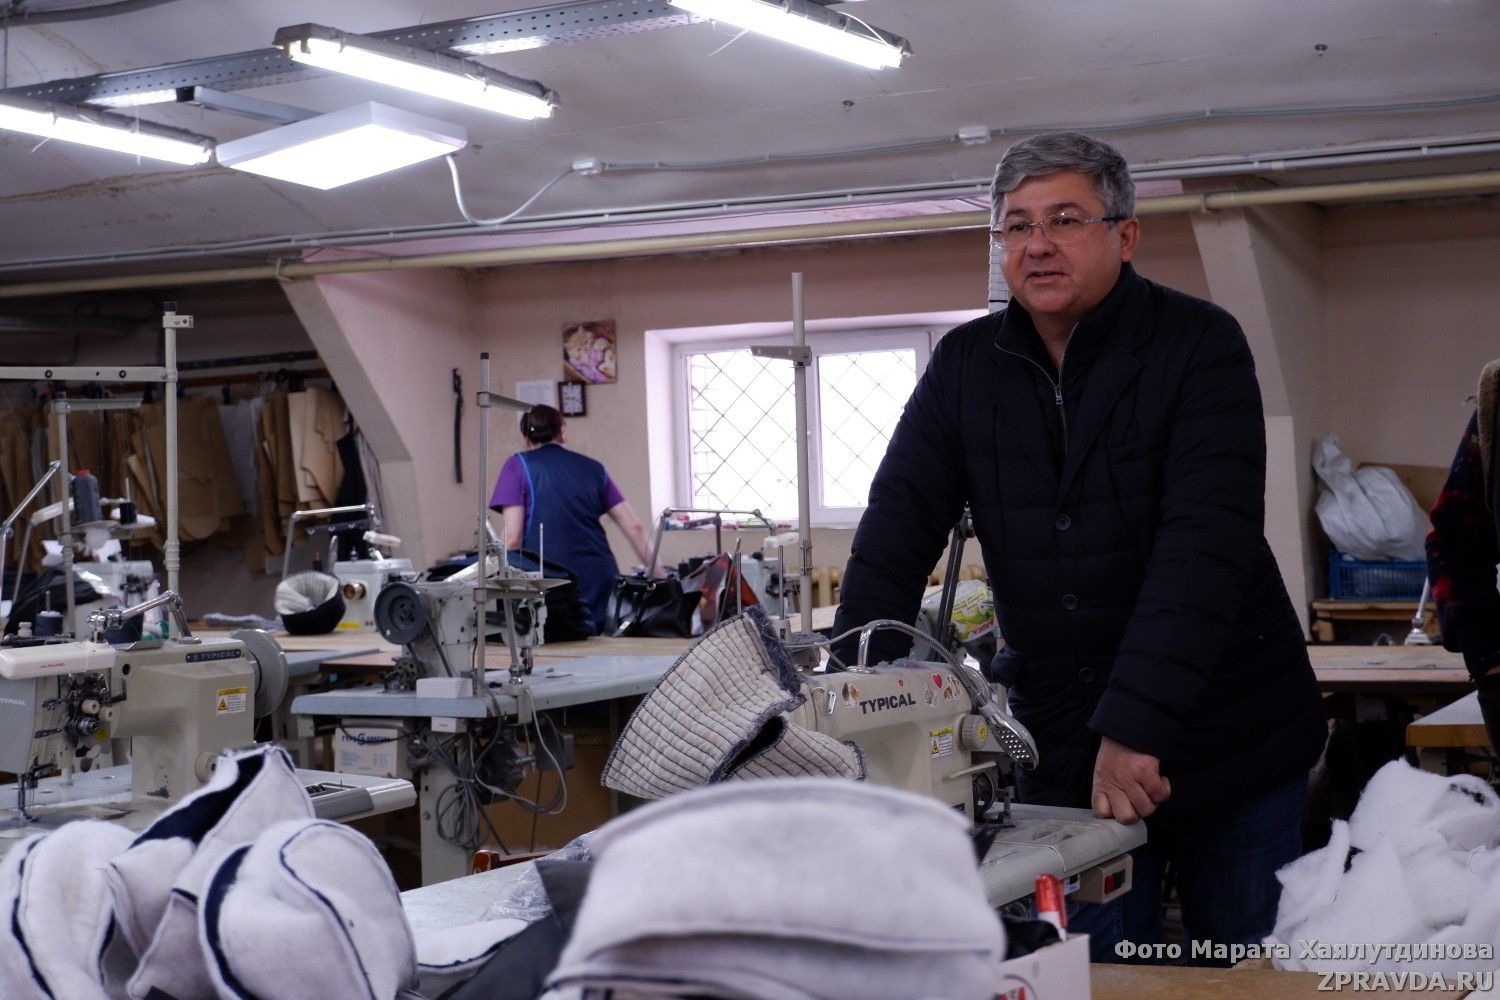 Михаил Афанасьев оценил швейное производство в посёлке Васильево